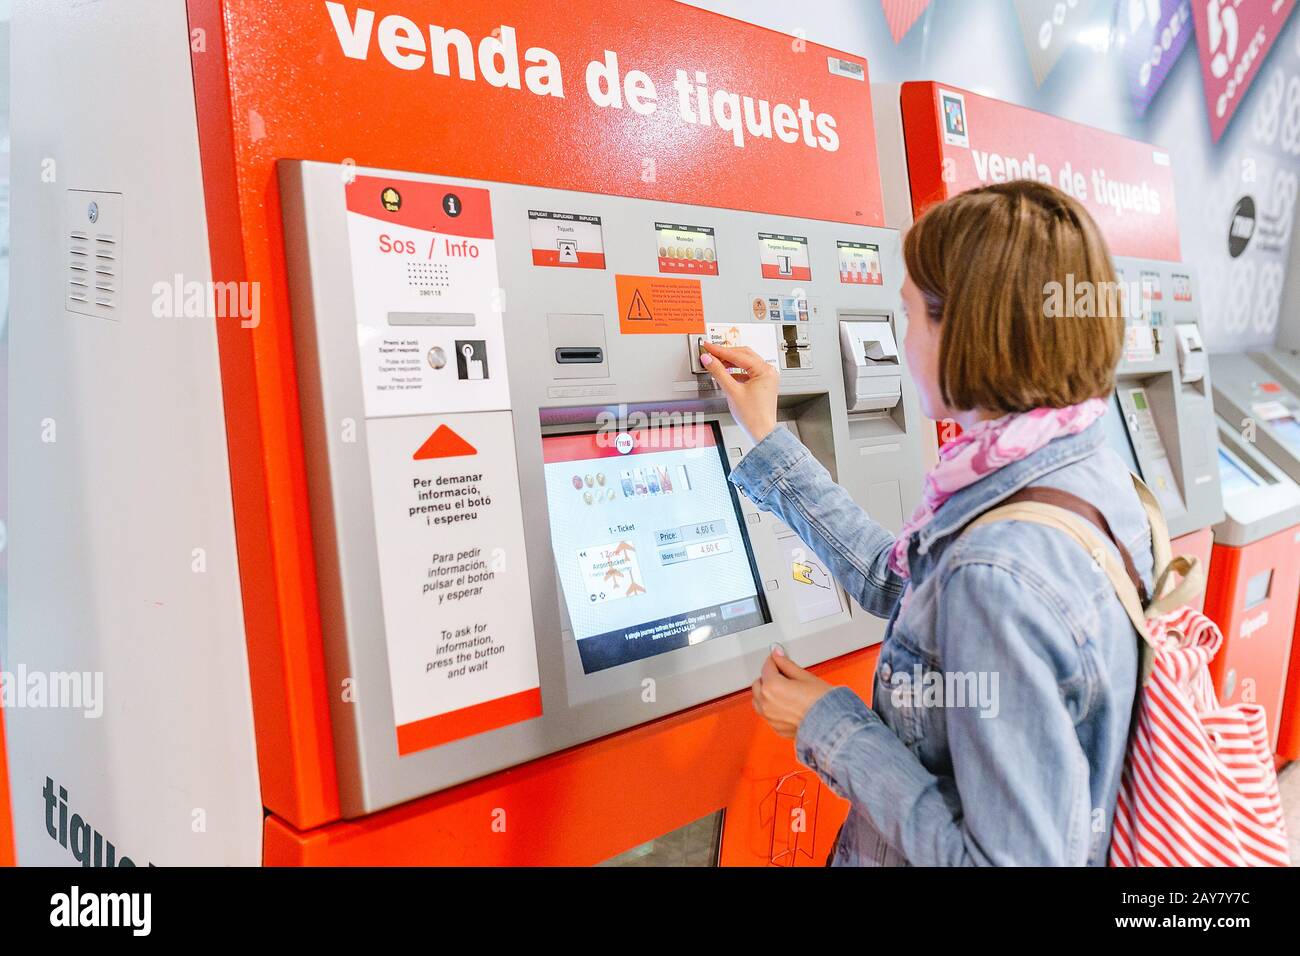 09 JUILLET 2018, BARCELONE, ESPAGNE: Une femme de voyage achetant un billet à un distributeur de billets de transport publice TMB à la station de métro Banque D'Images